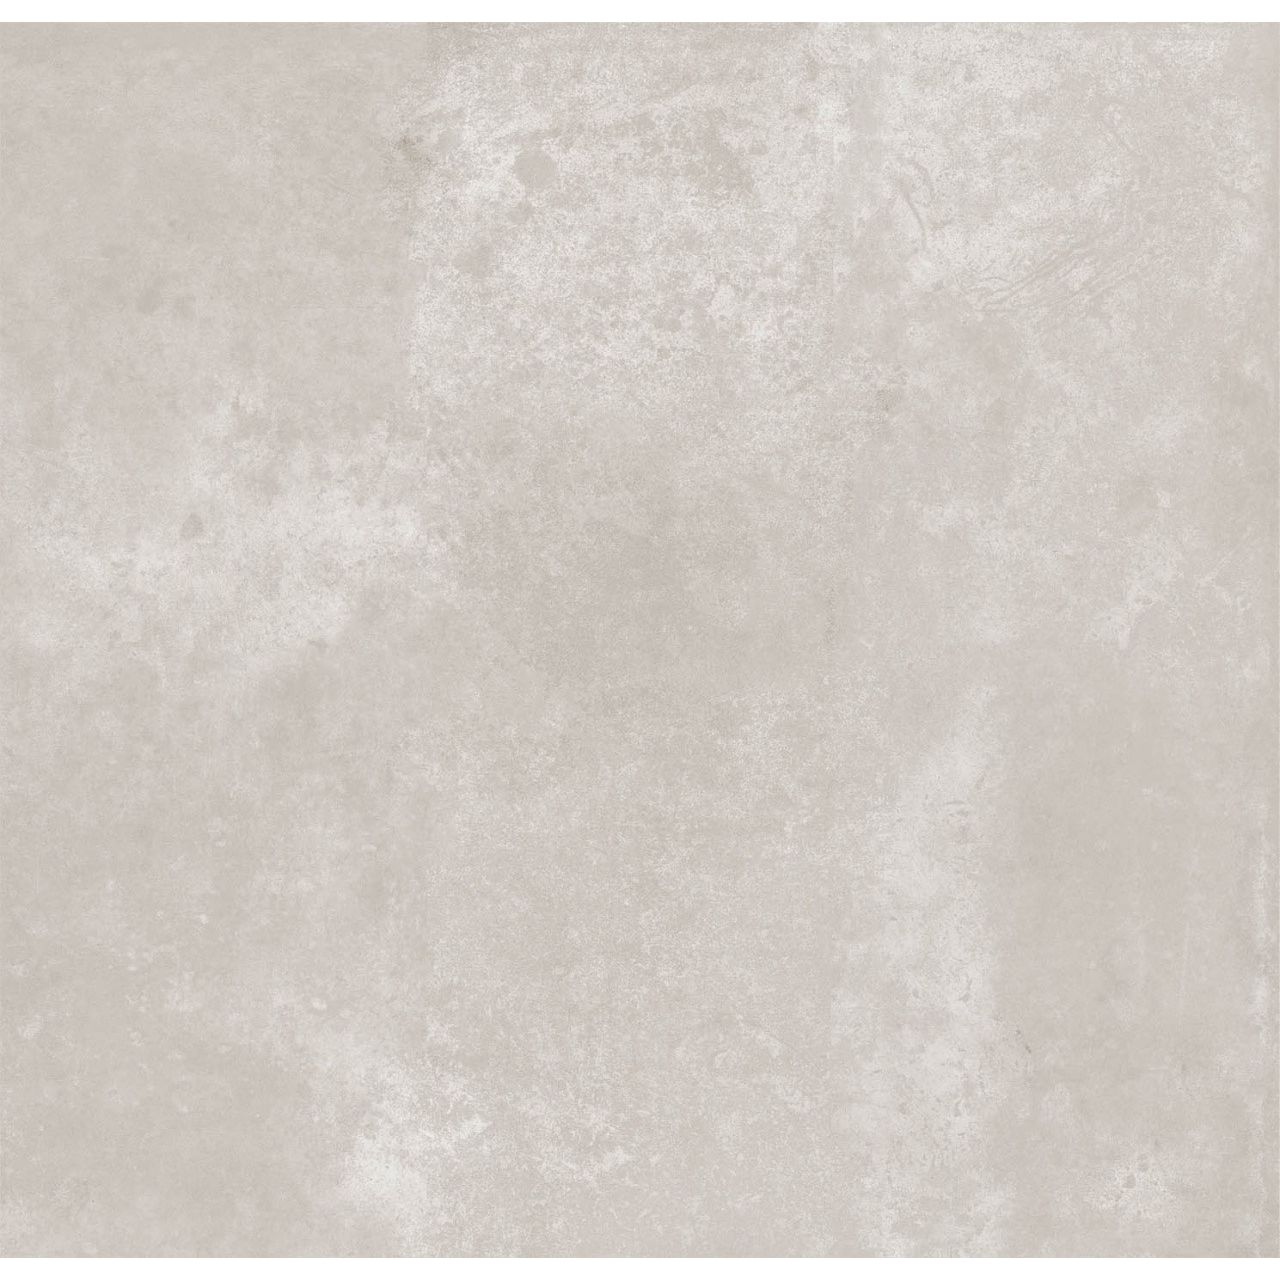 Керамогранит М-Квадрат (Кировская керамика) ProGres Cemento 420х420 мм серый (INR0012)